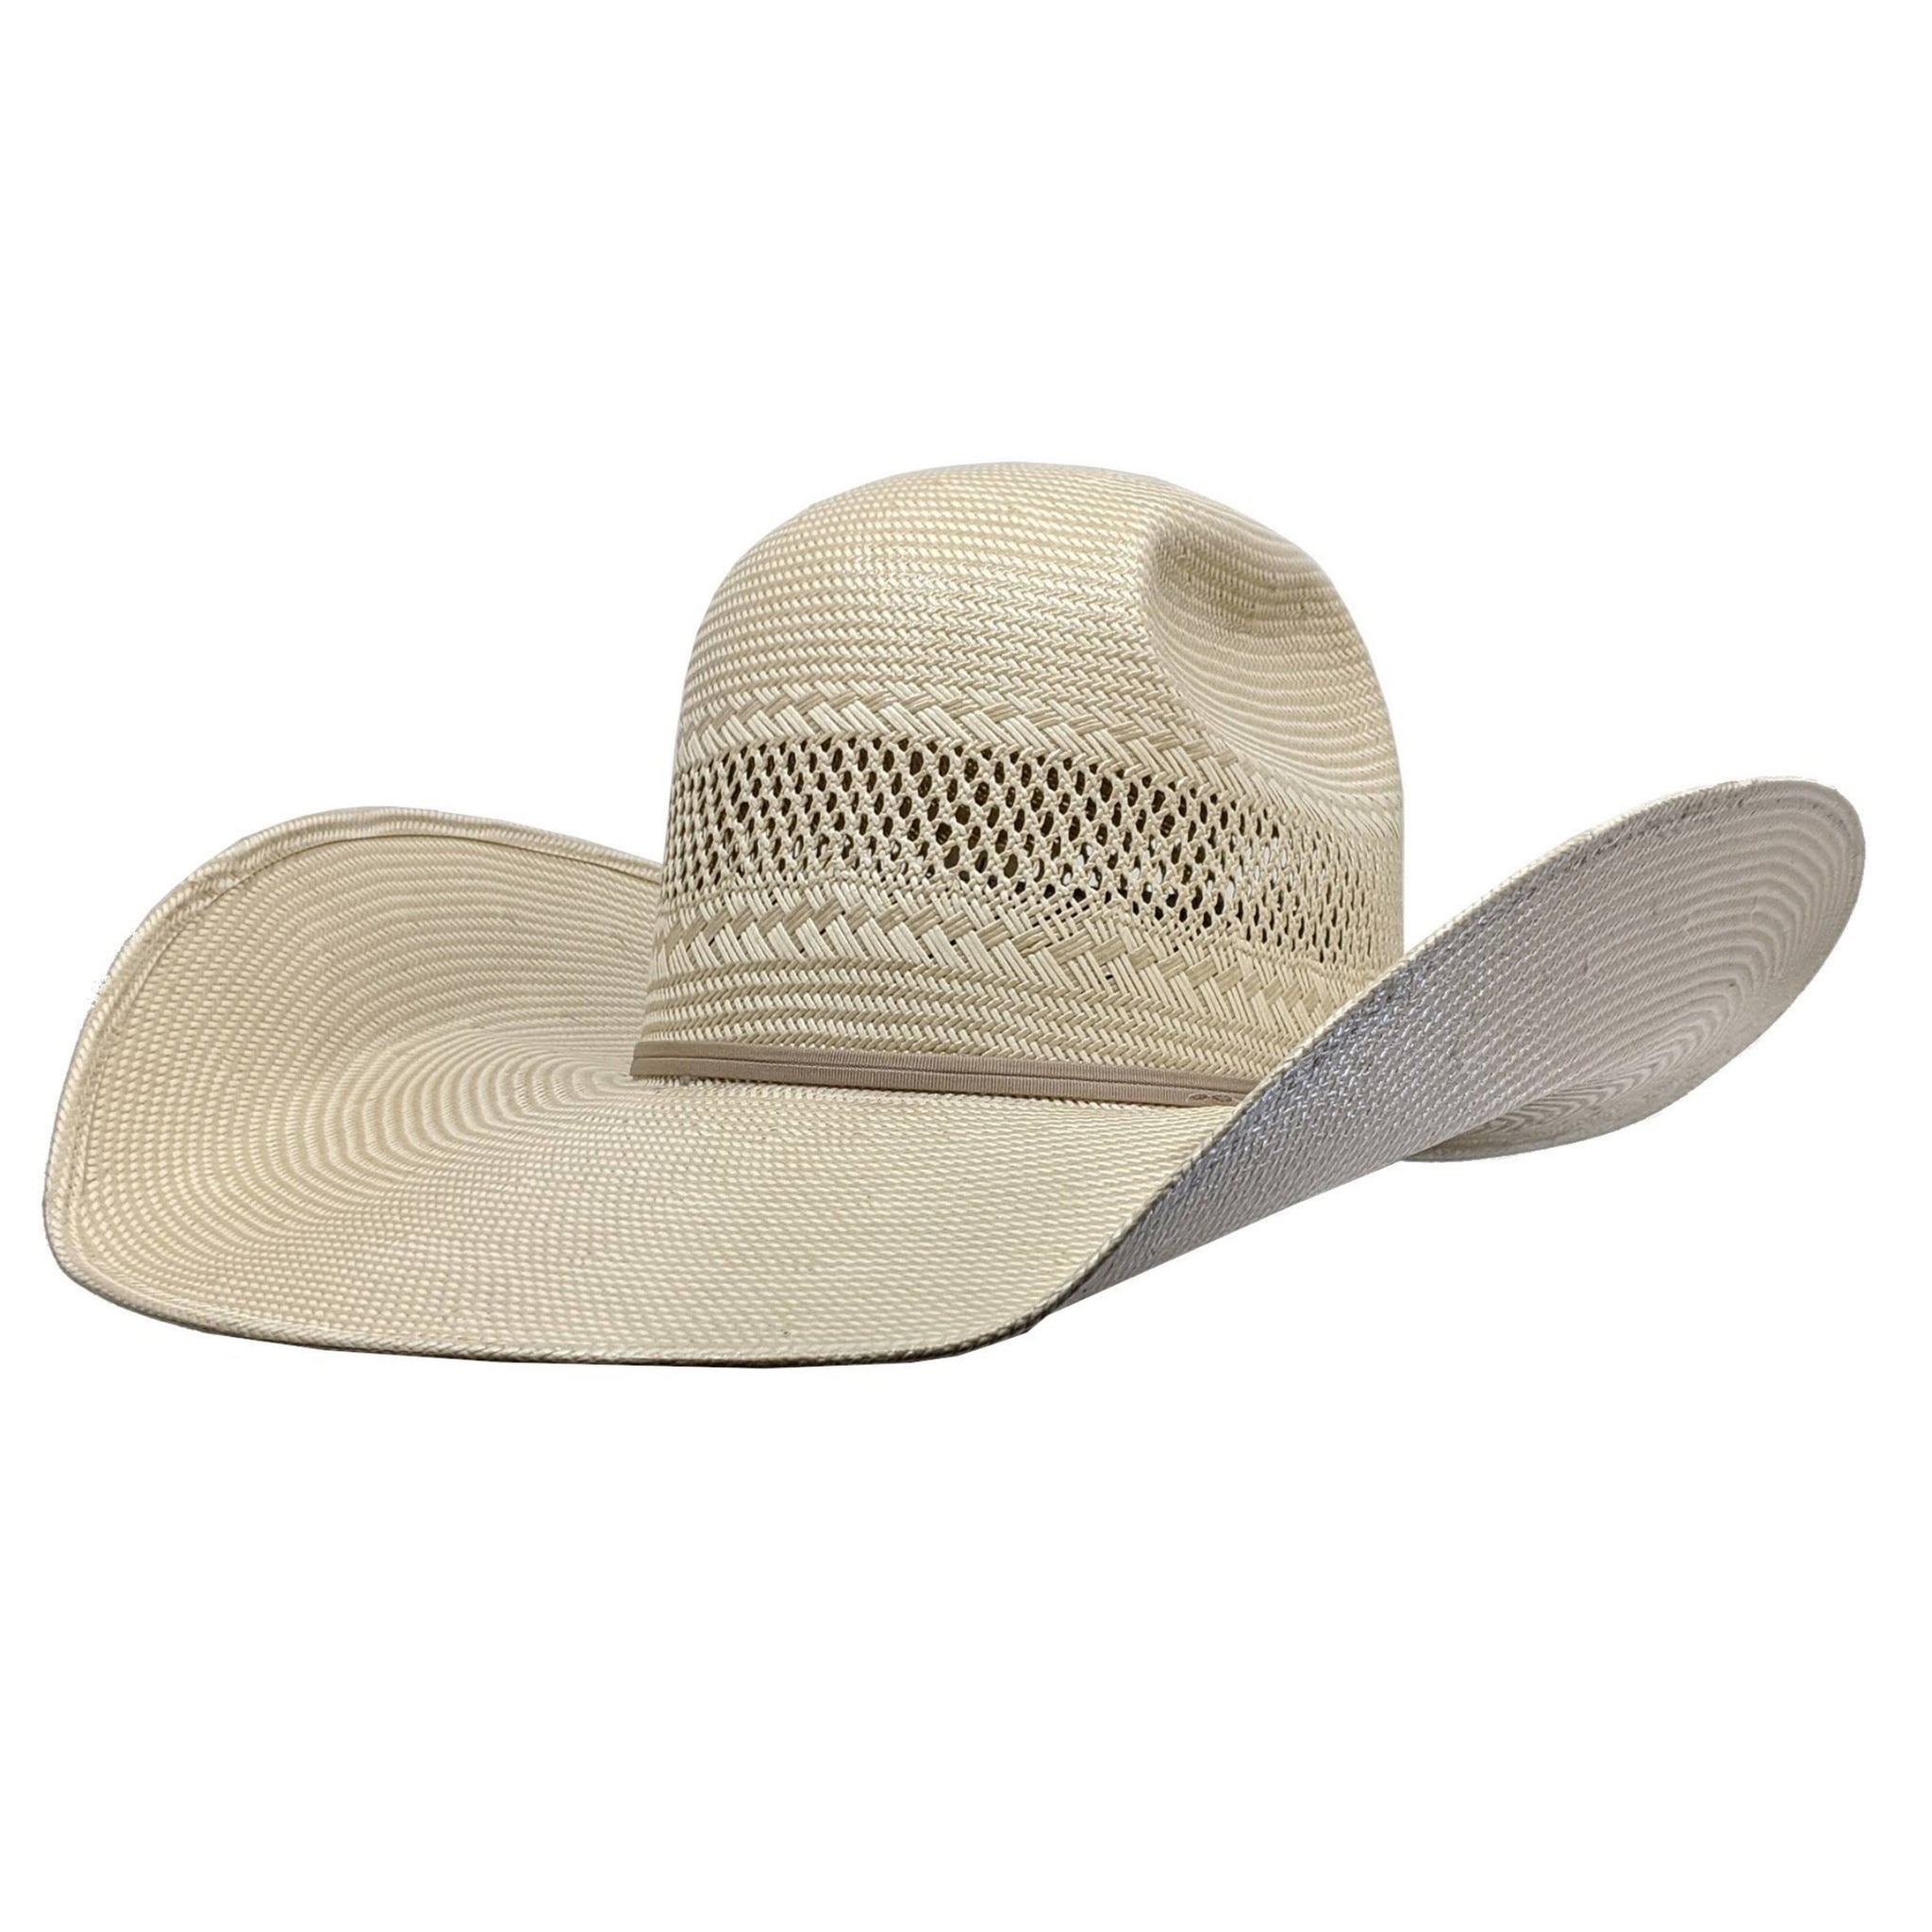 Atwood Hat Company Cheyenne Straw Cowboy Hat (5" Brim)